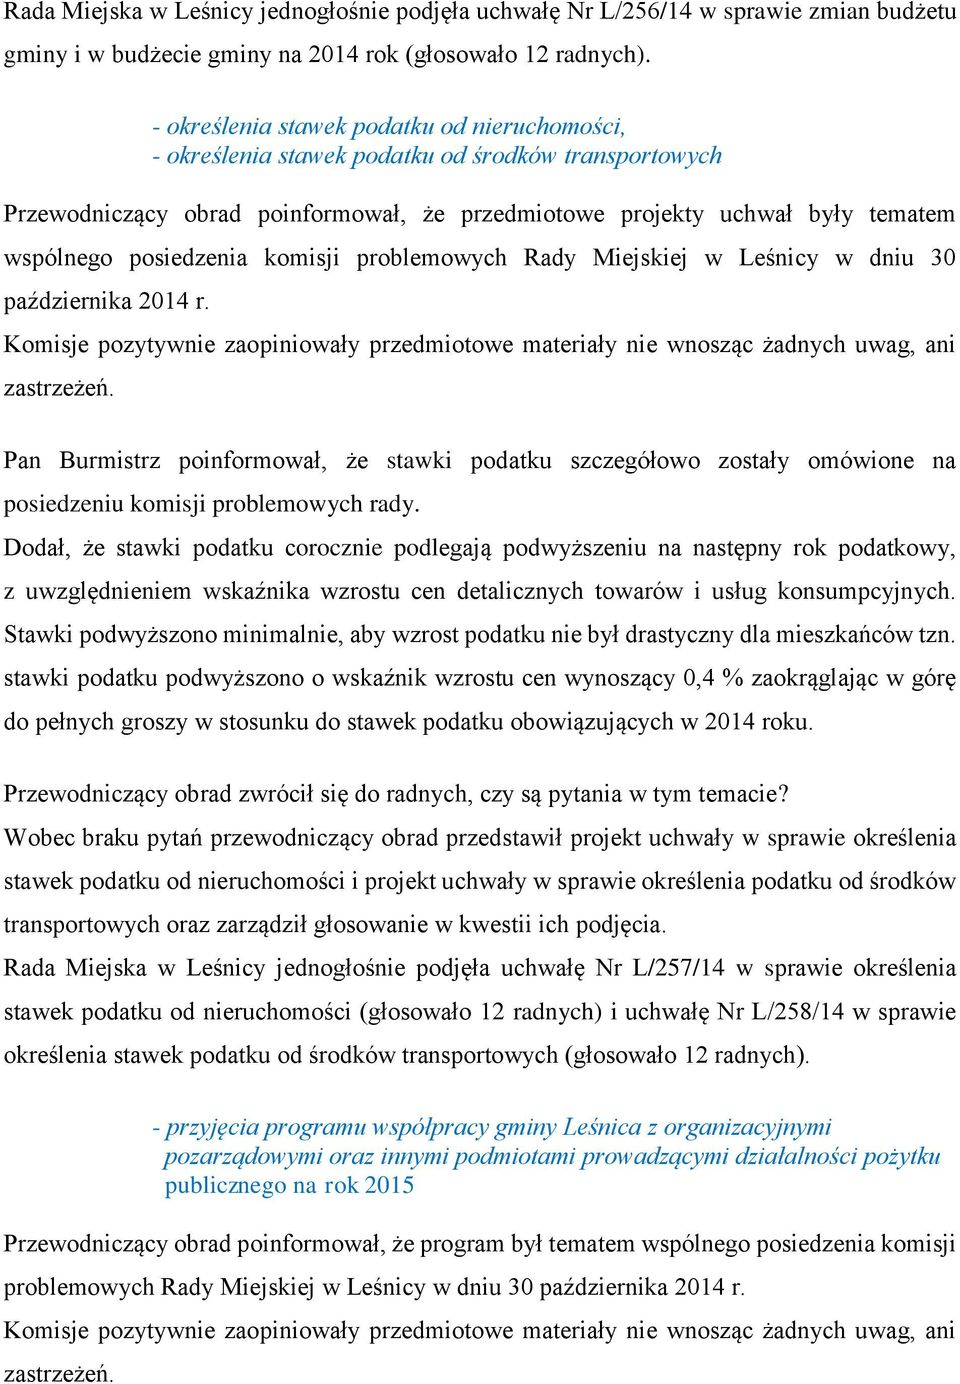 posiedzenia komisji problemowych Rady Miejskiej w Leśnicy w dniu 30 października 2014 r. Komisje pozytywnie zaopiniowały przedmiotowe materiały nie wnosząc żadnych uwag, ani zastrzeżeń.